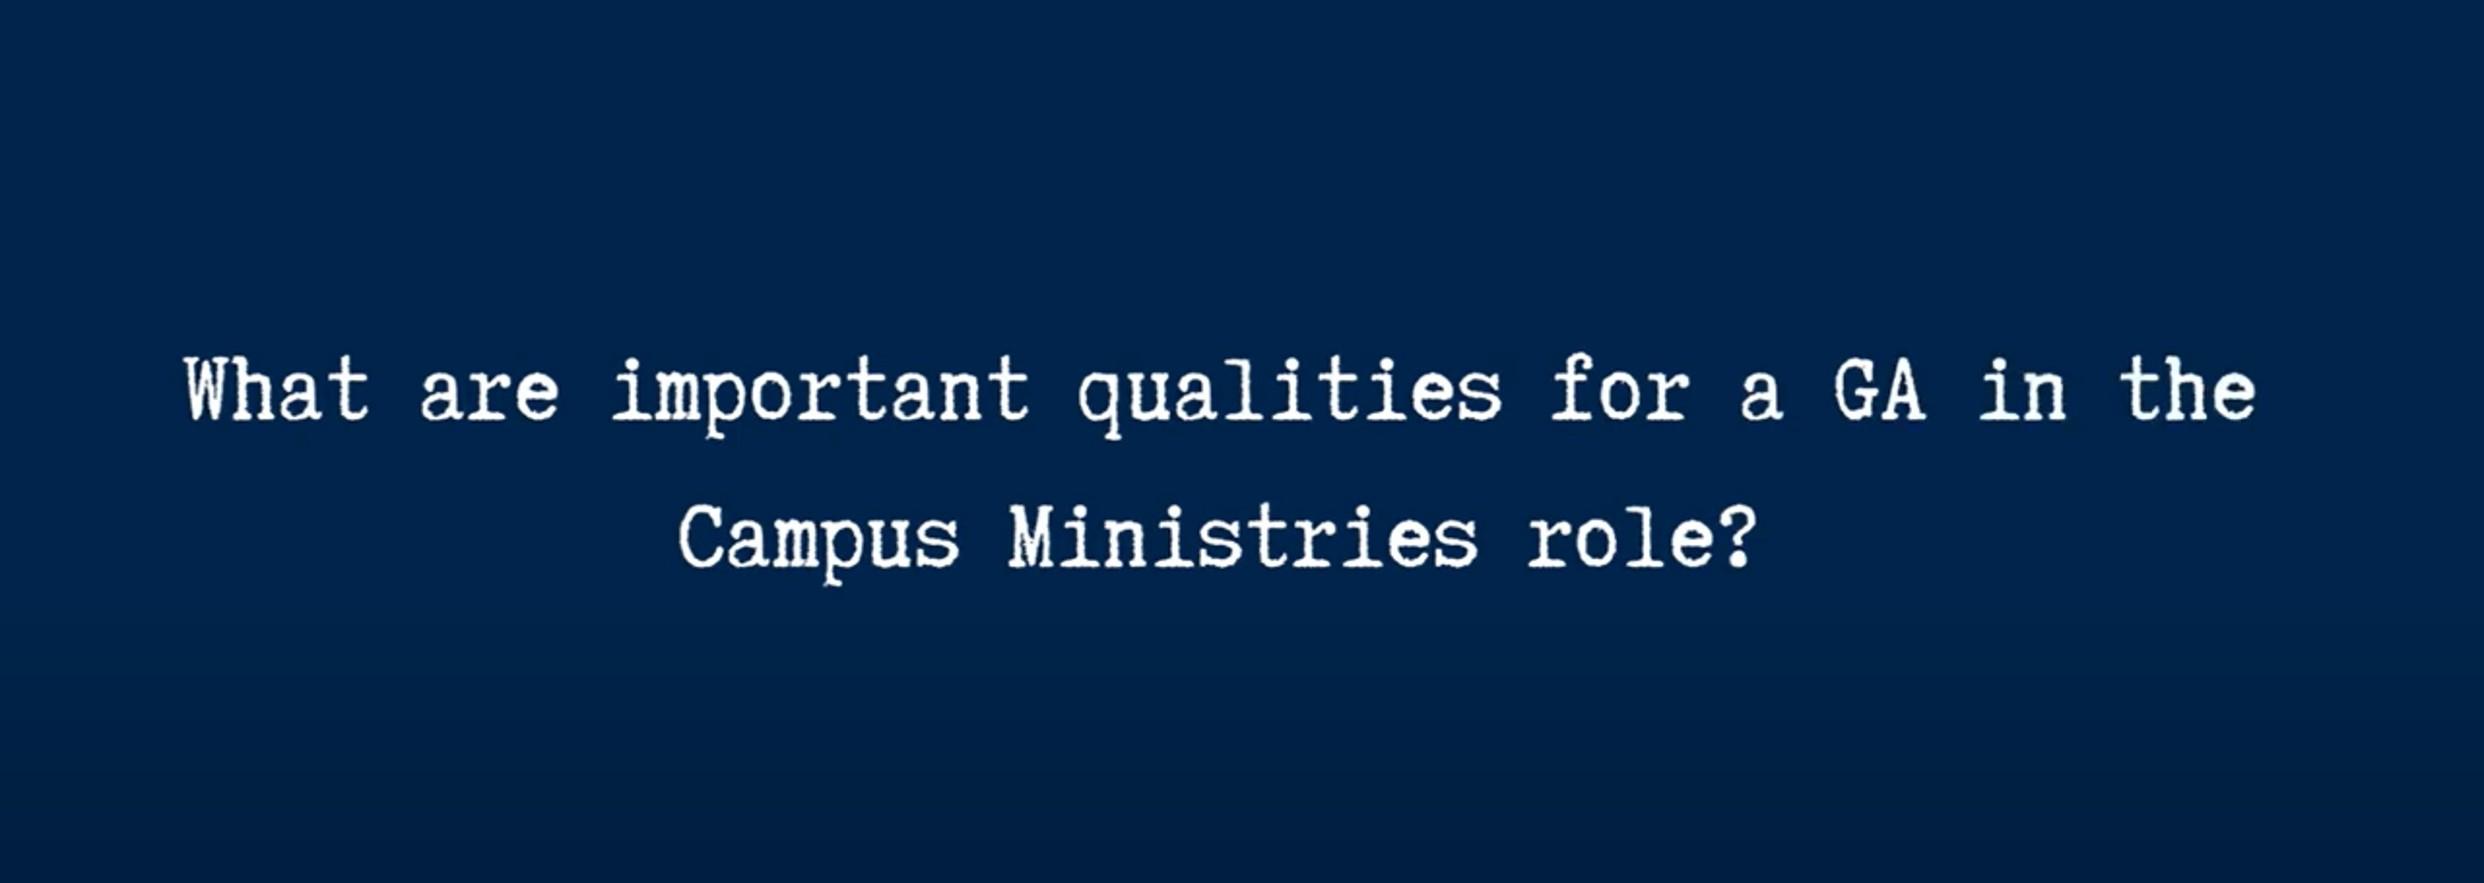 Campus ministries